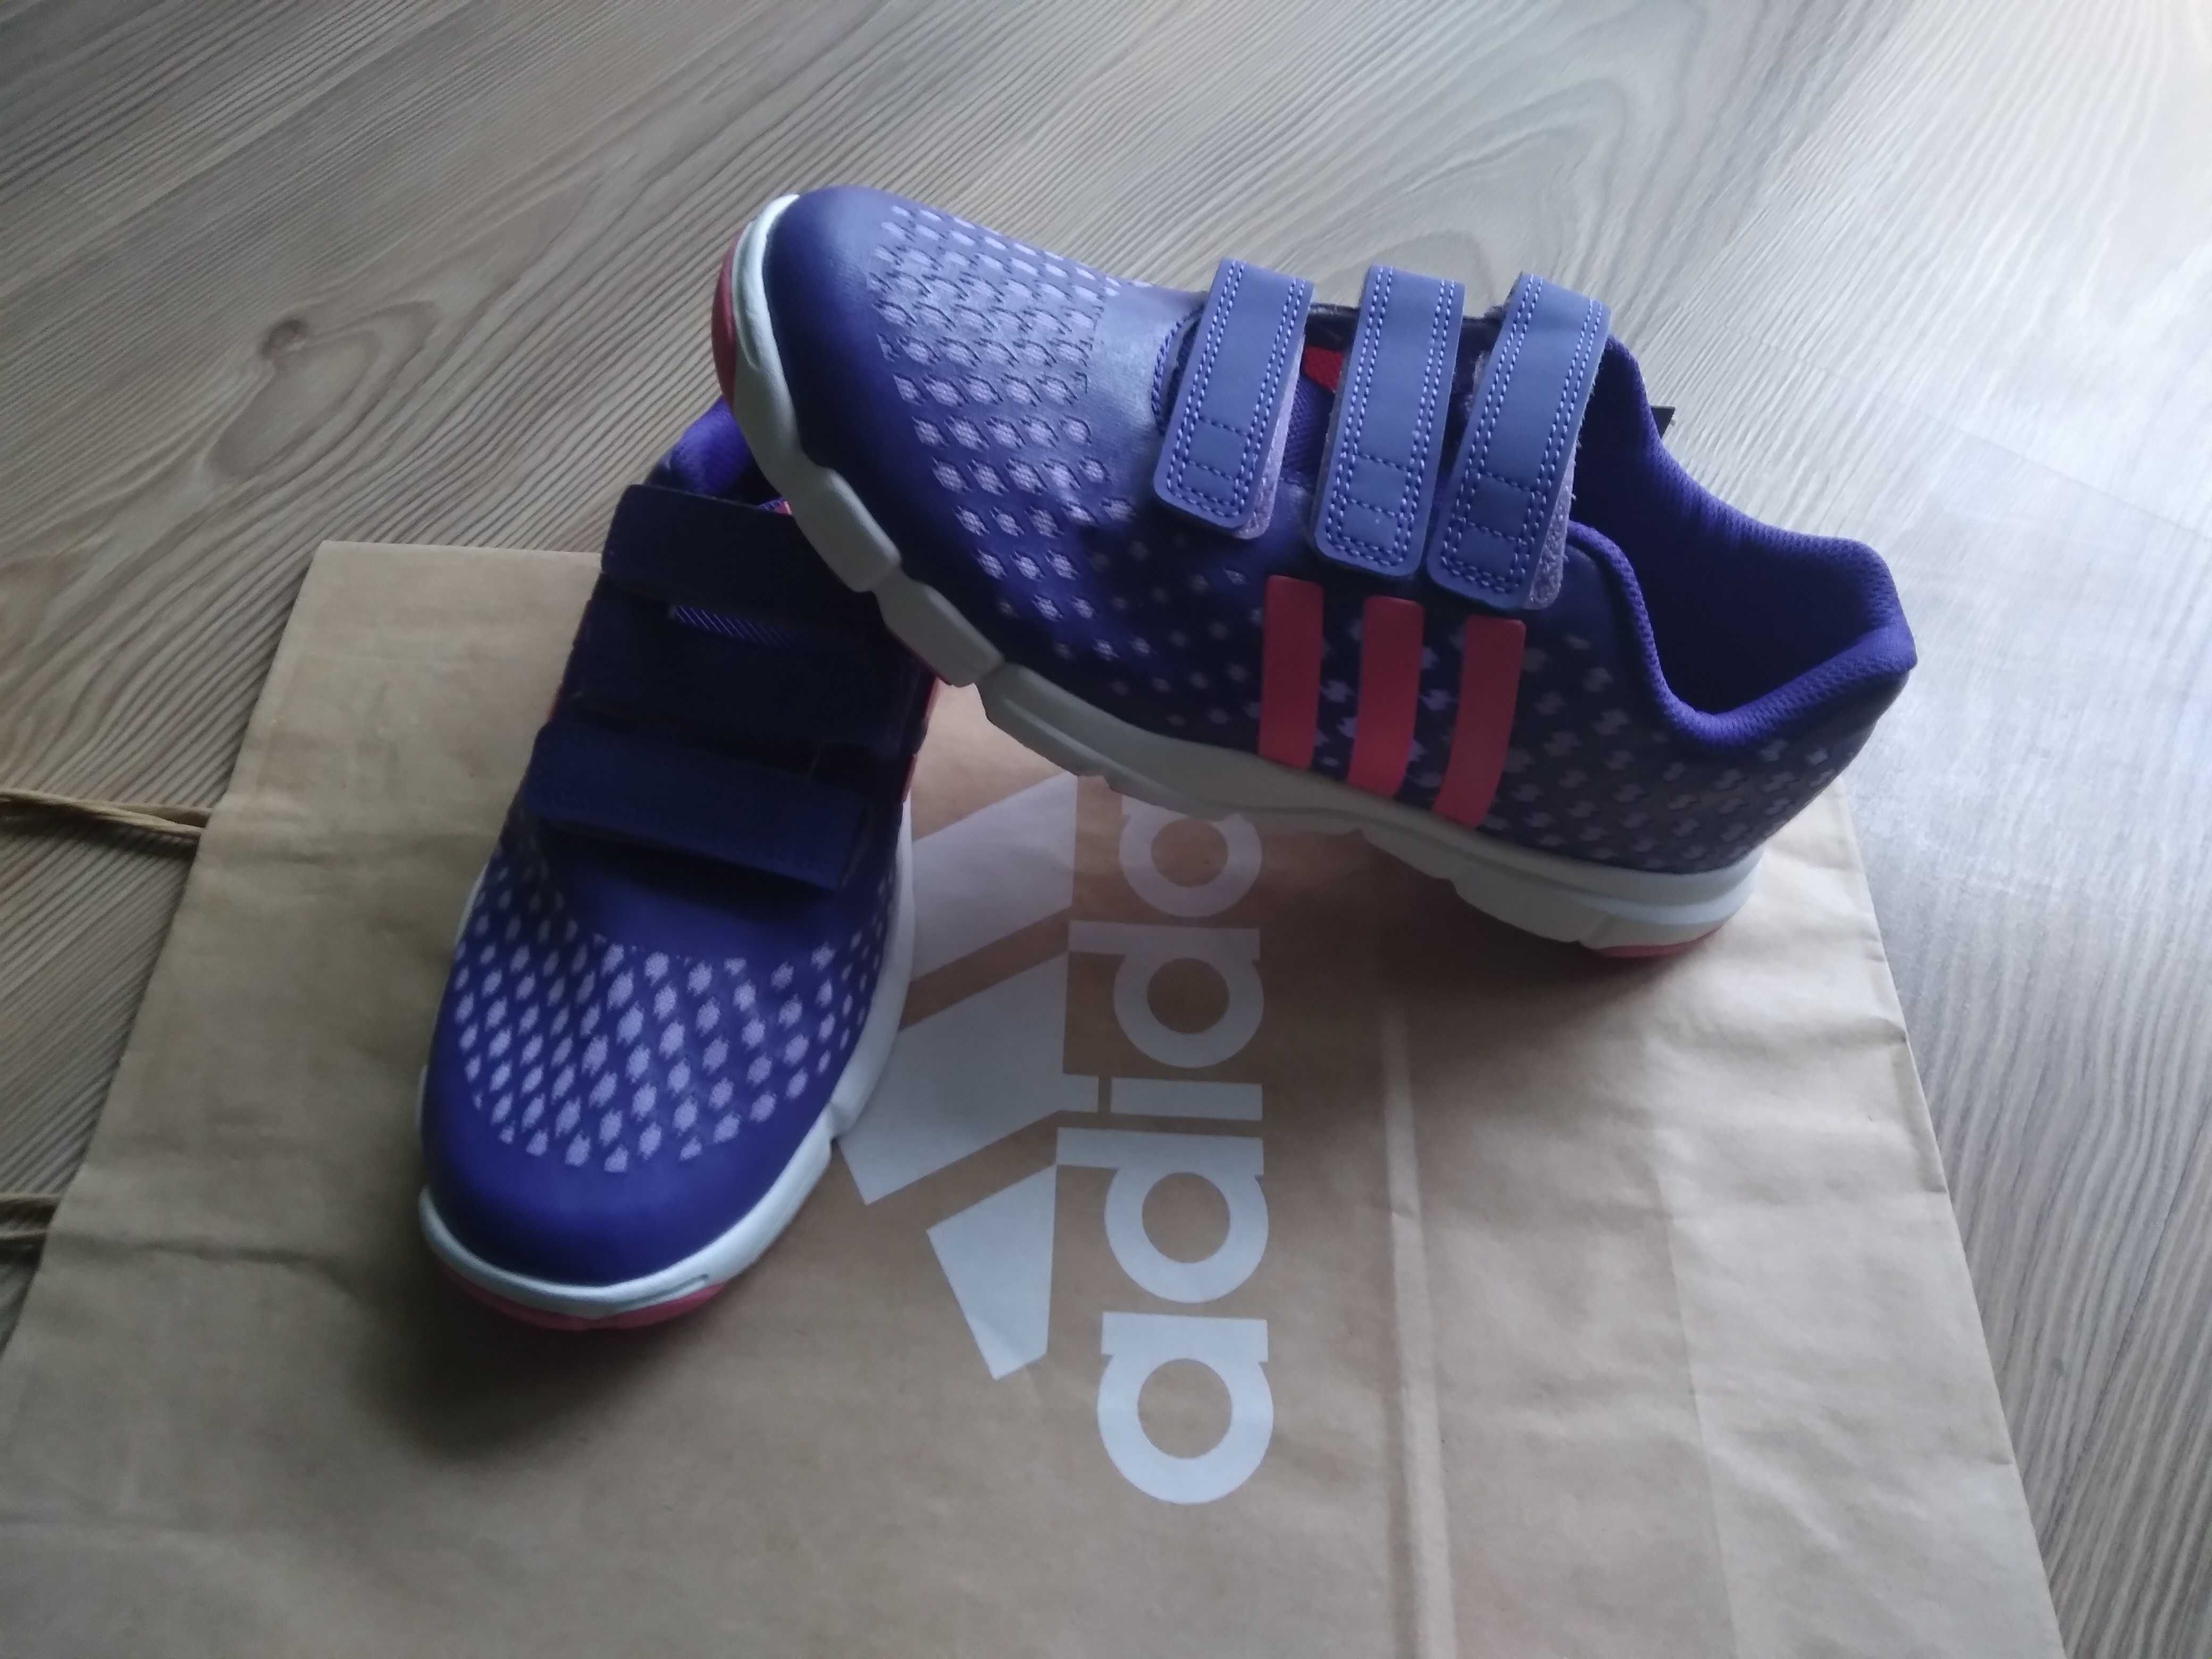 Нови!!! Adidas - детски маратонки